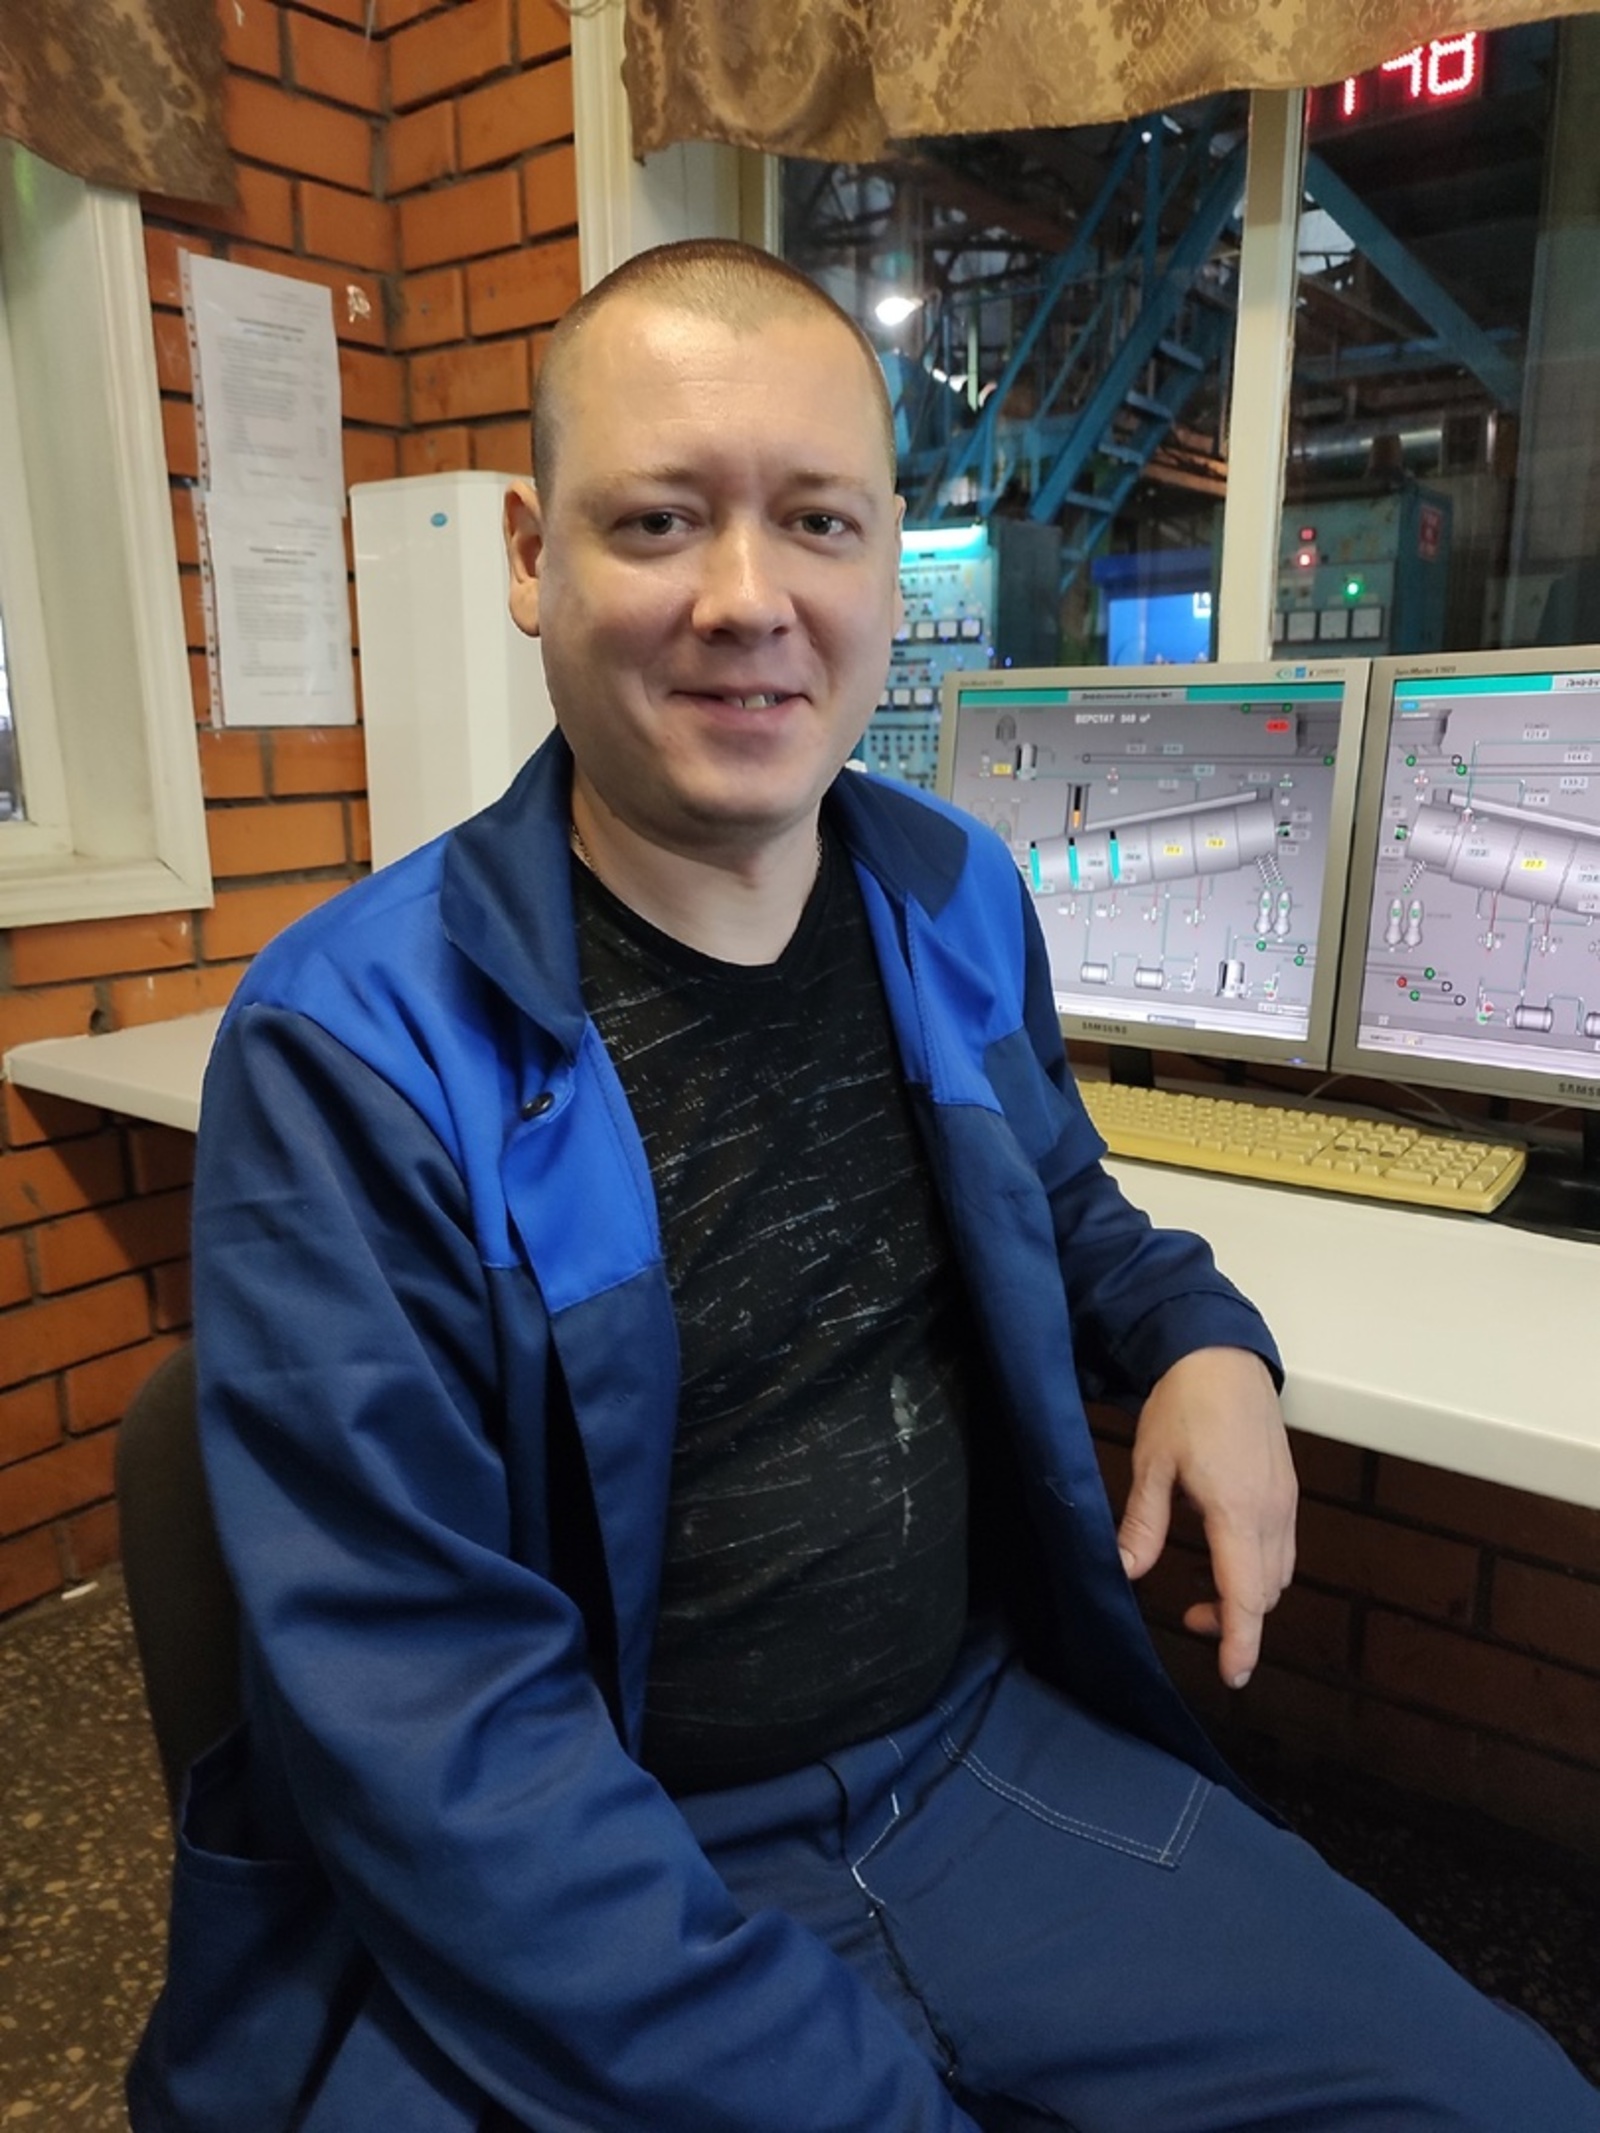 Люди года - лучшим работником перерабатывающей промышленности признан Дмитрий Чибизов